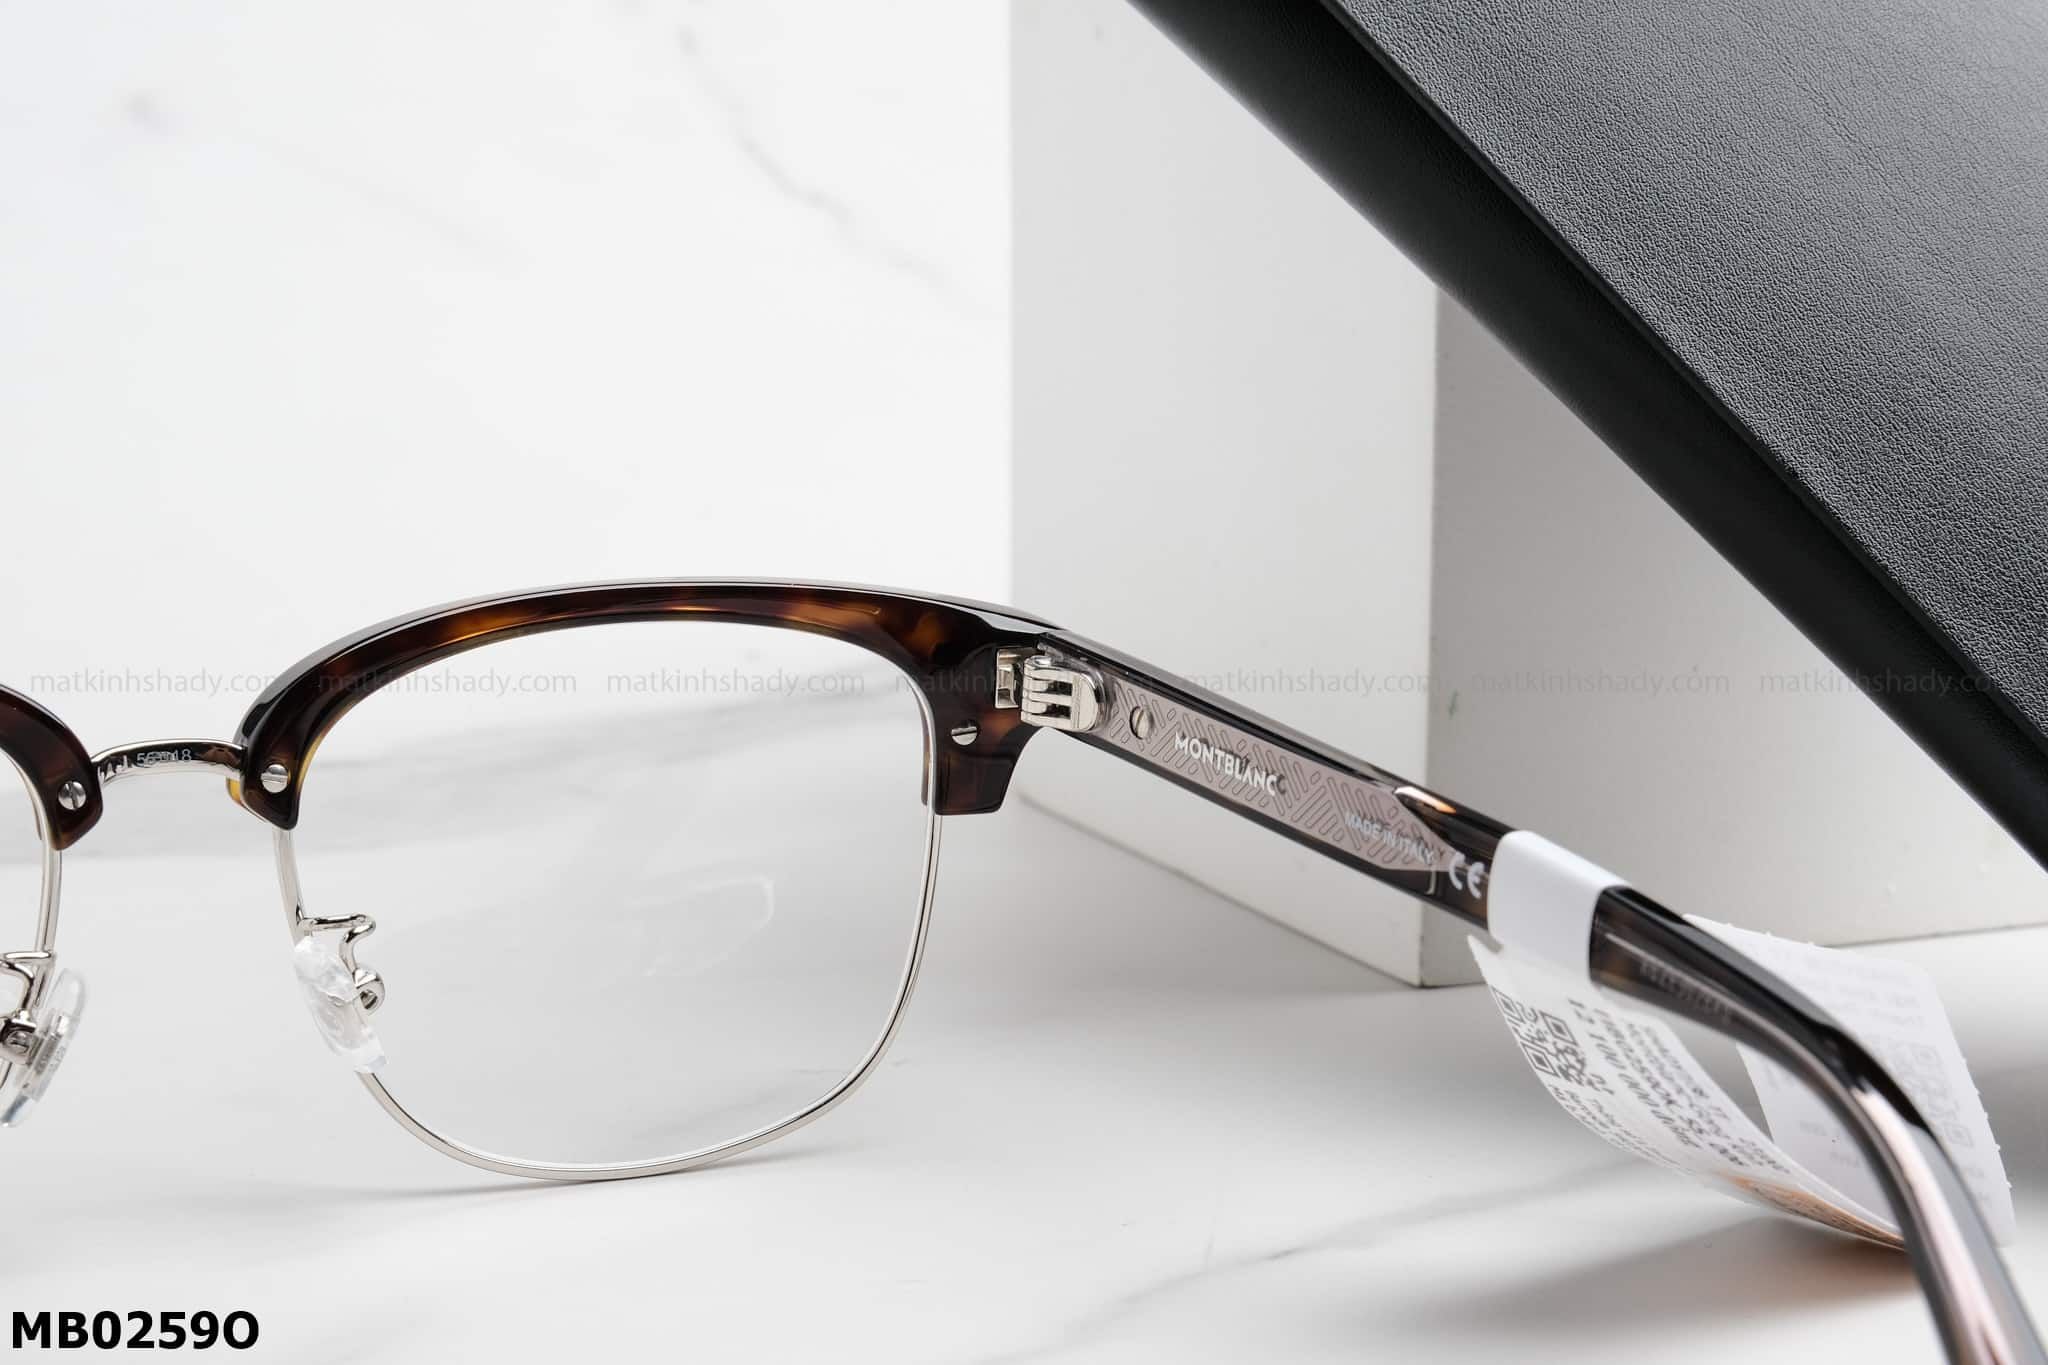  Montblanc Eyewear - Glasses - MB0259O 